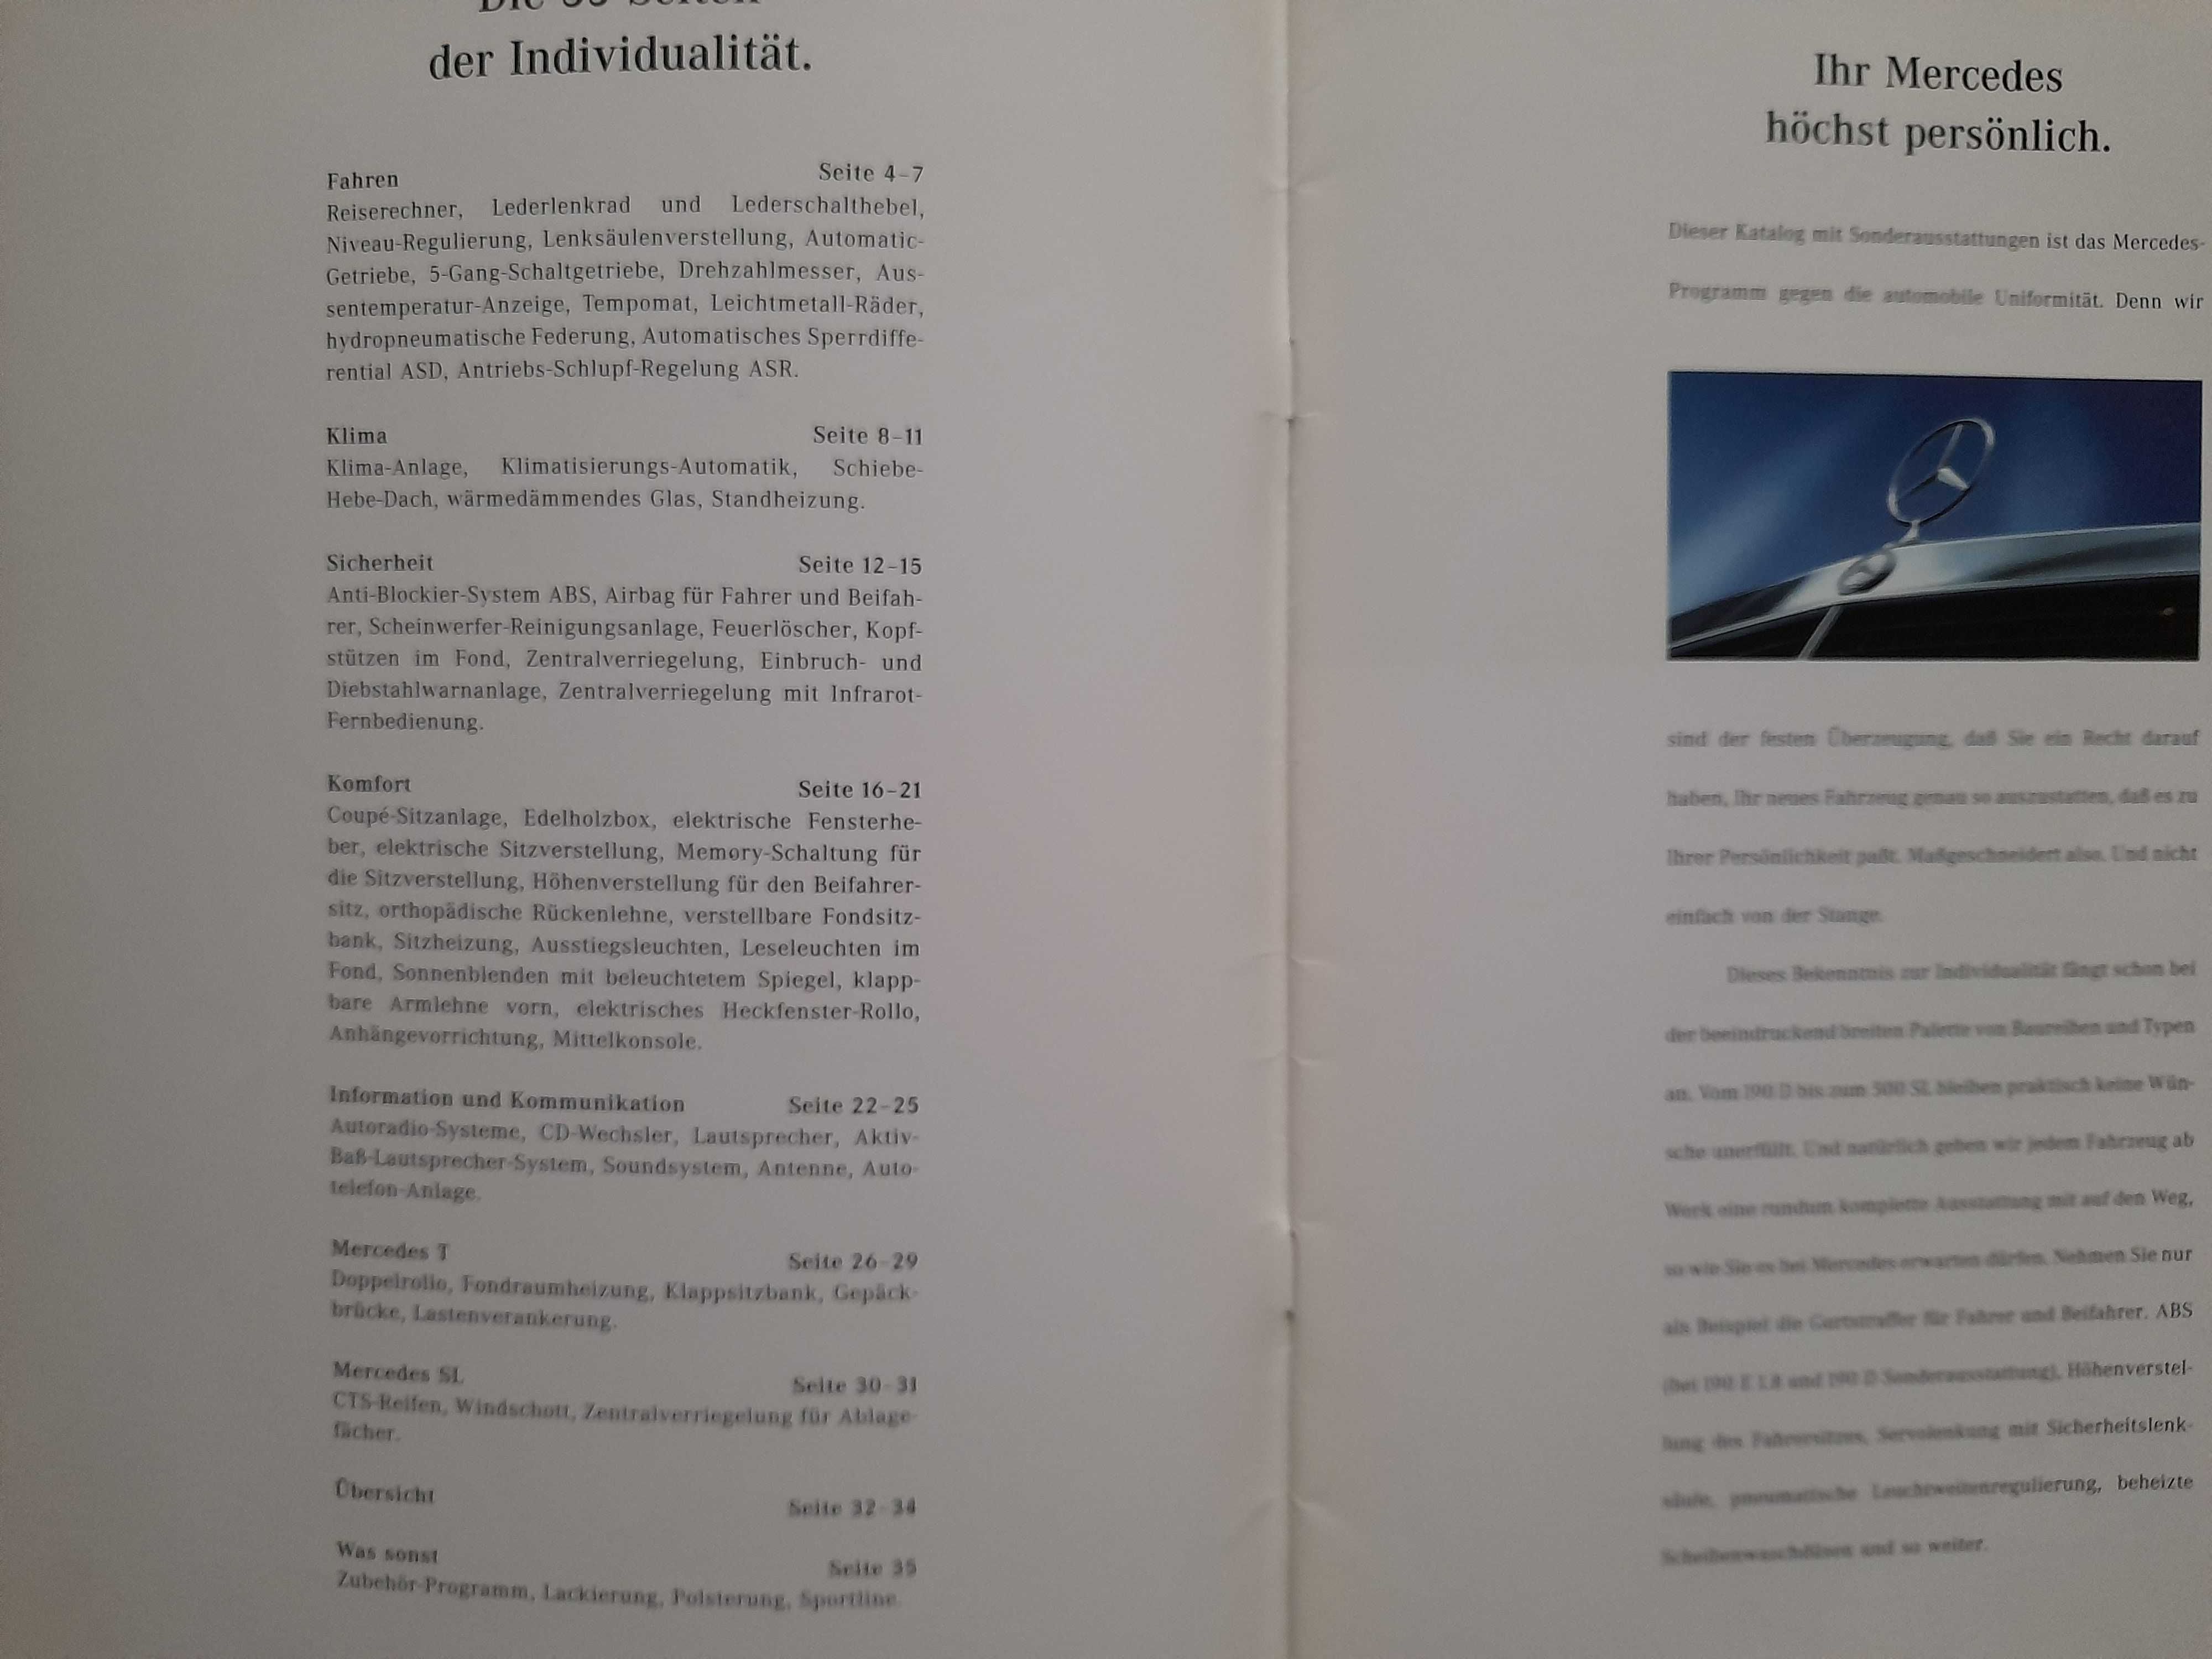 MERCEDES wyposażenie dodatkowe prospekt niemiecki rok 1990